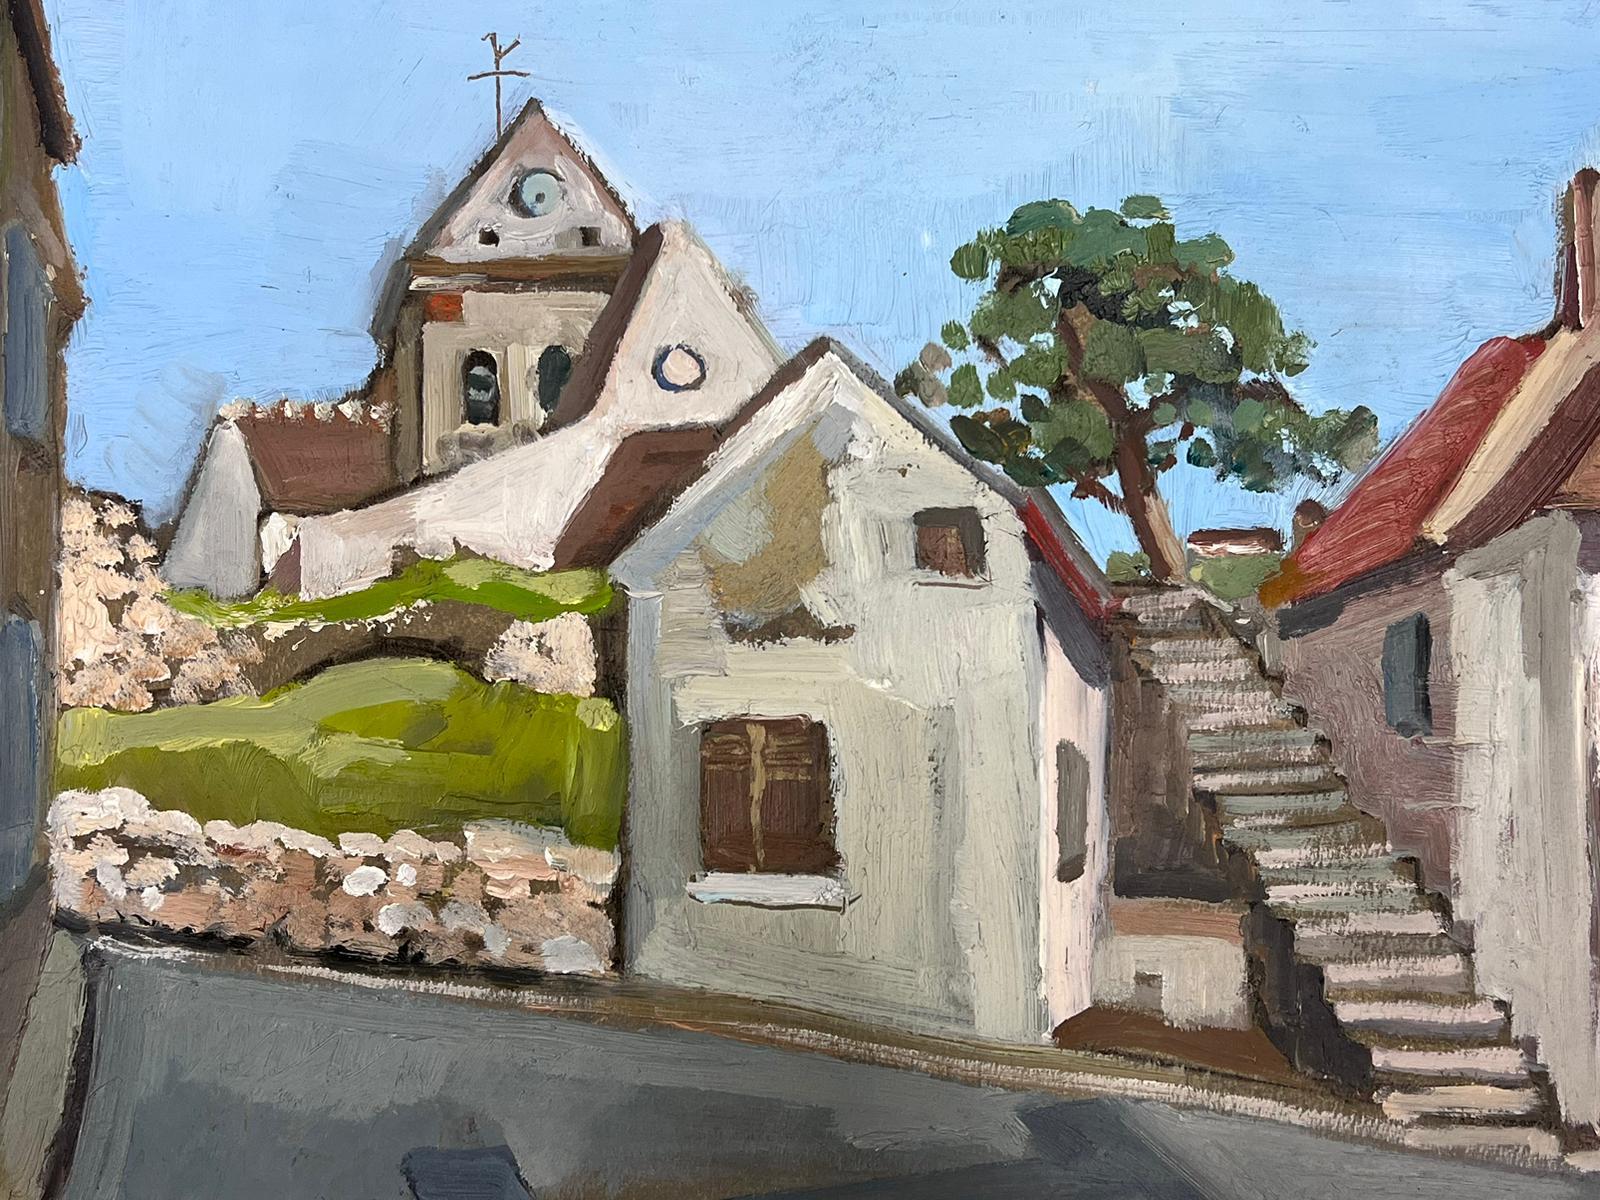 Les marches de l'église
par Y. Blanchon, impressionniste français des années 1950  
huile sur papier d'artiste, non encadrée
peinture : 13 x 16.5 pouces
provenance : d'une grande collection privée de cet artiste dans le nord de la France
état :